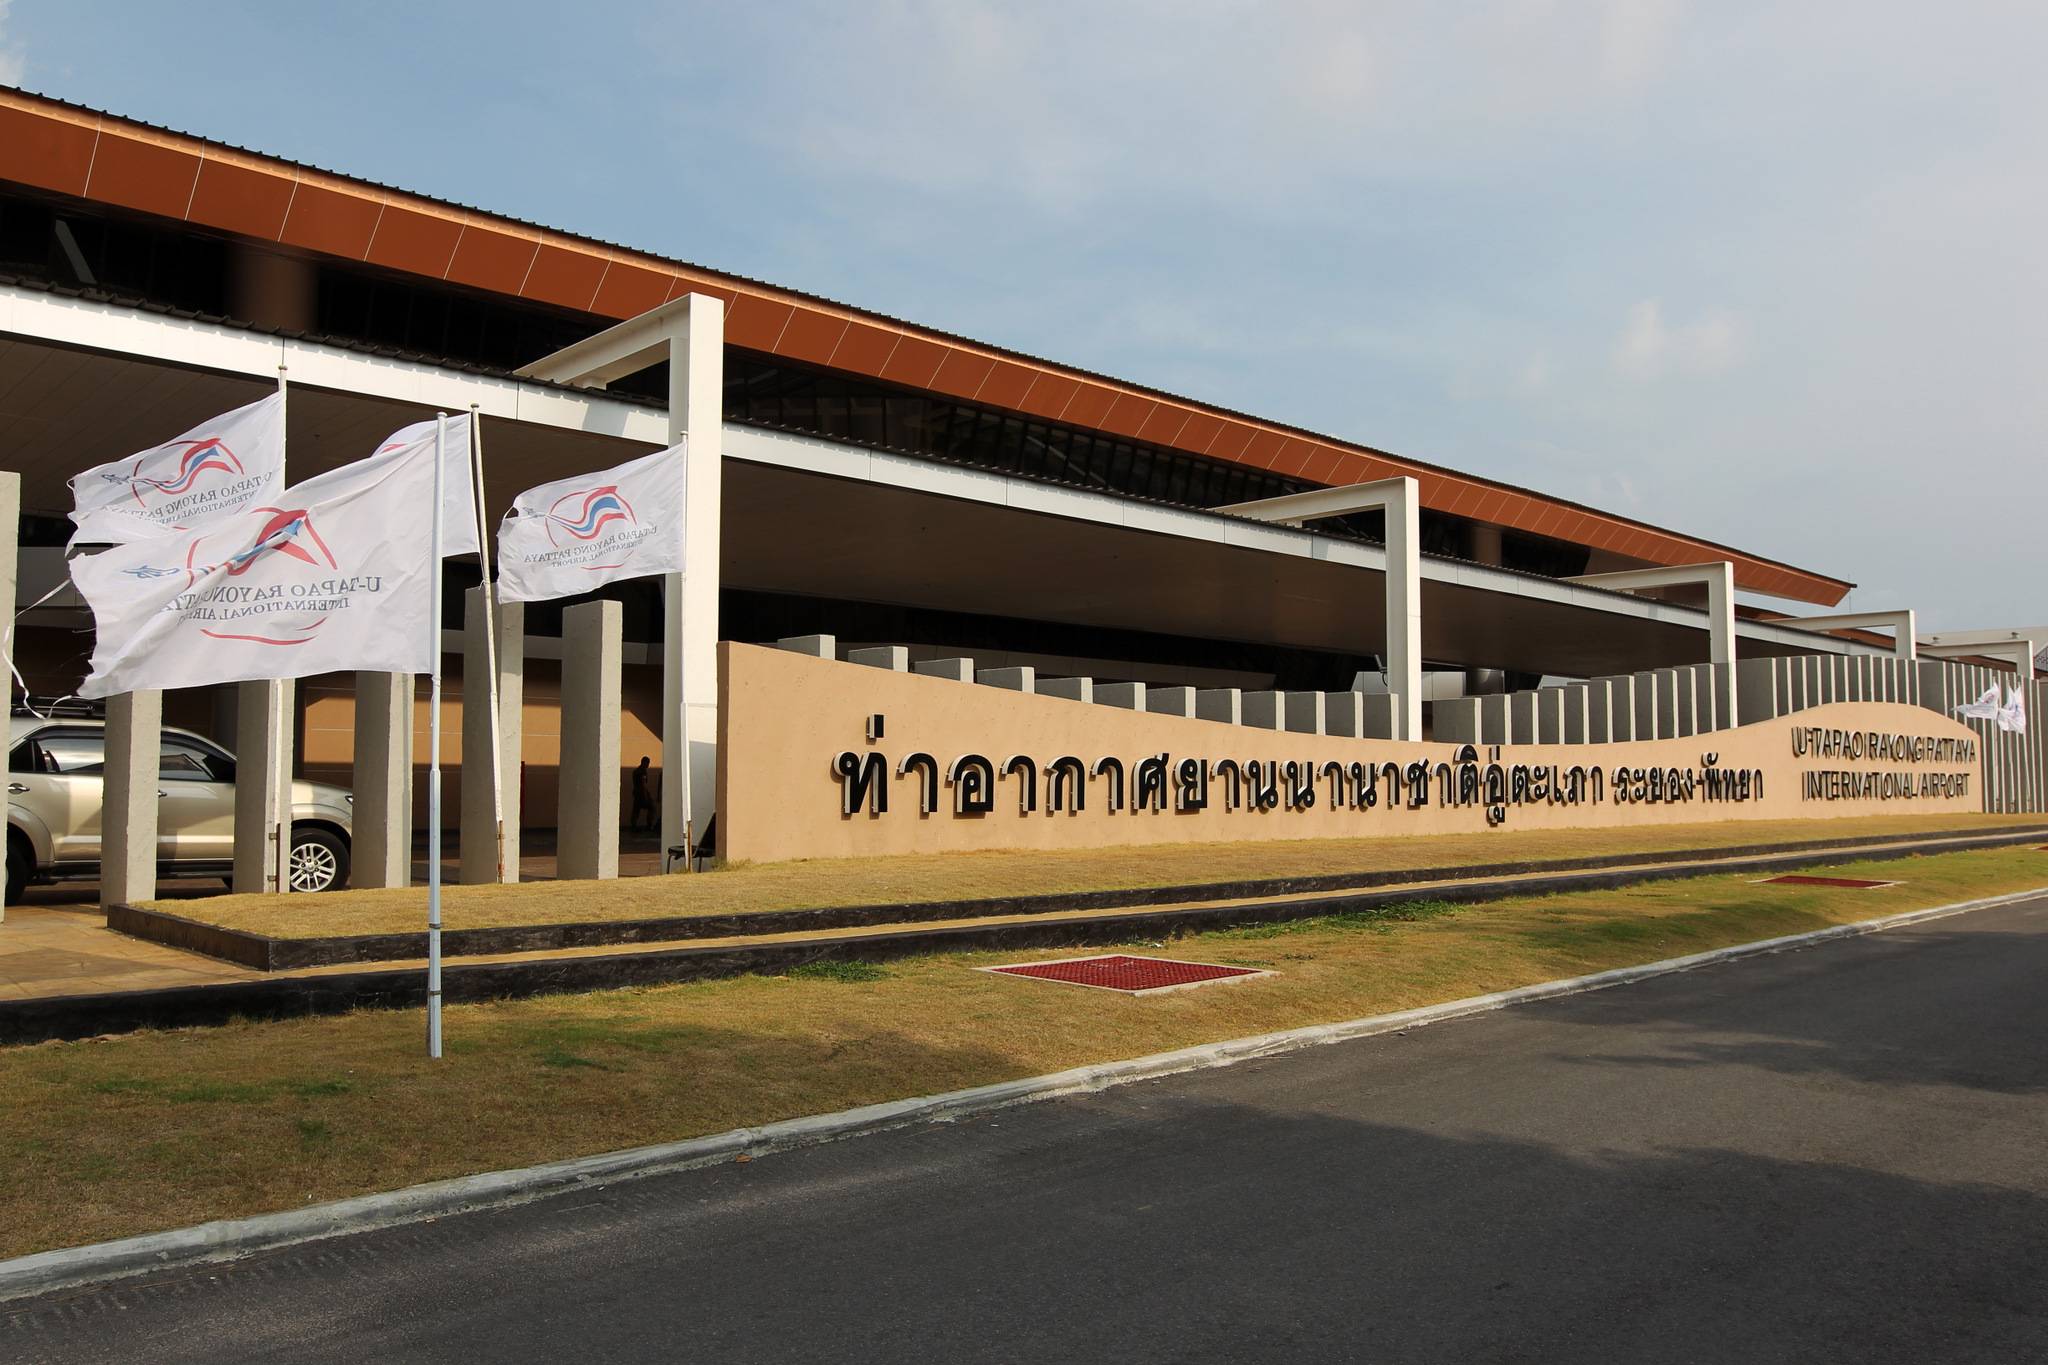 Об аэропорте утапао (таиланд) utp vtbu - официальный сайт, контакты